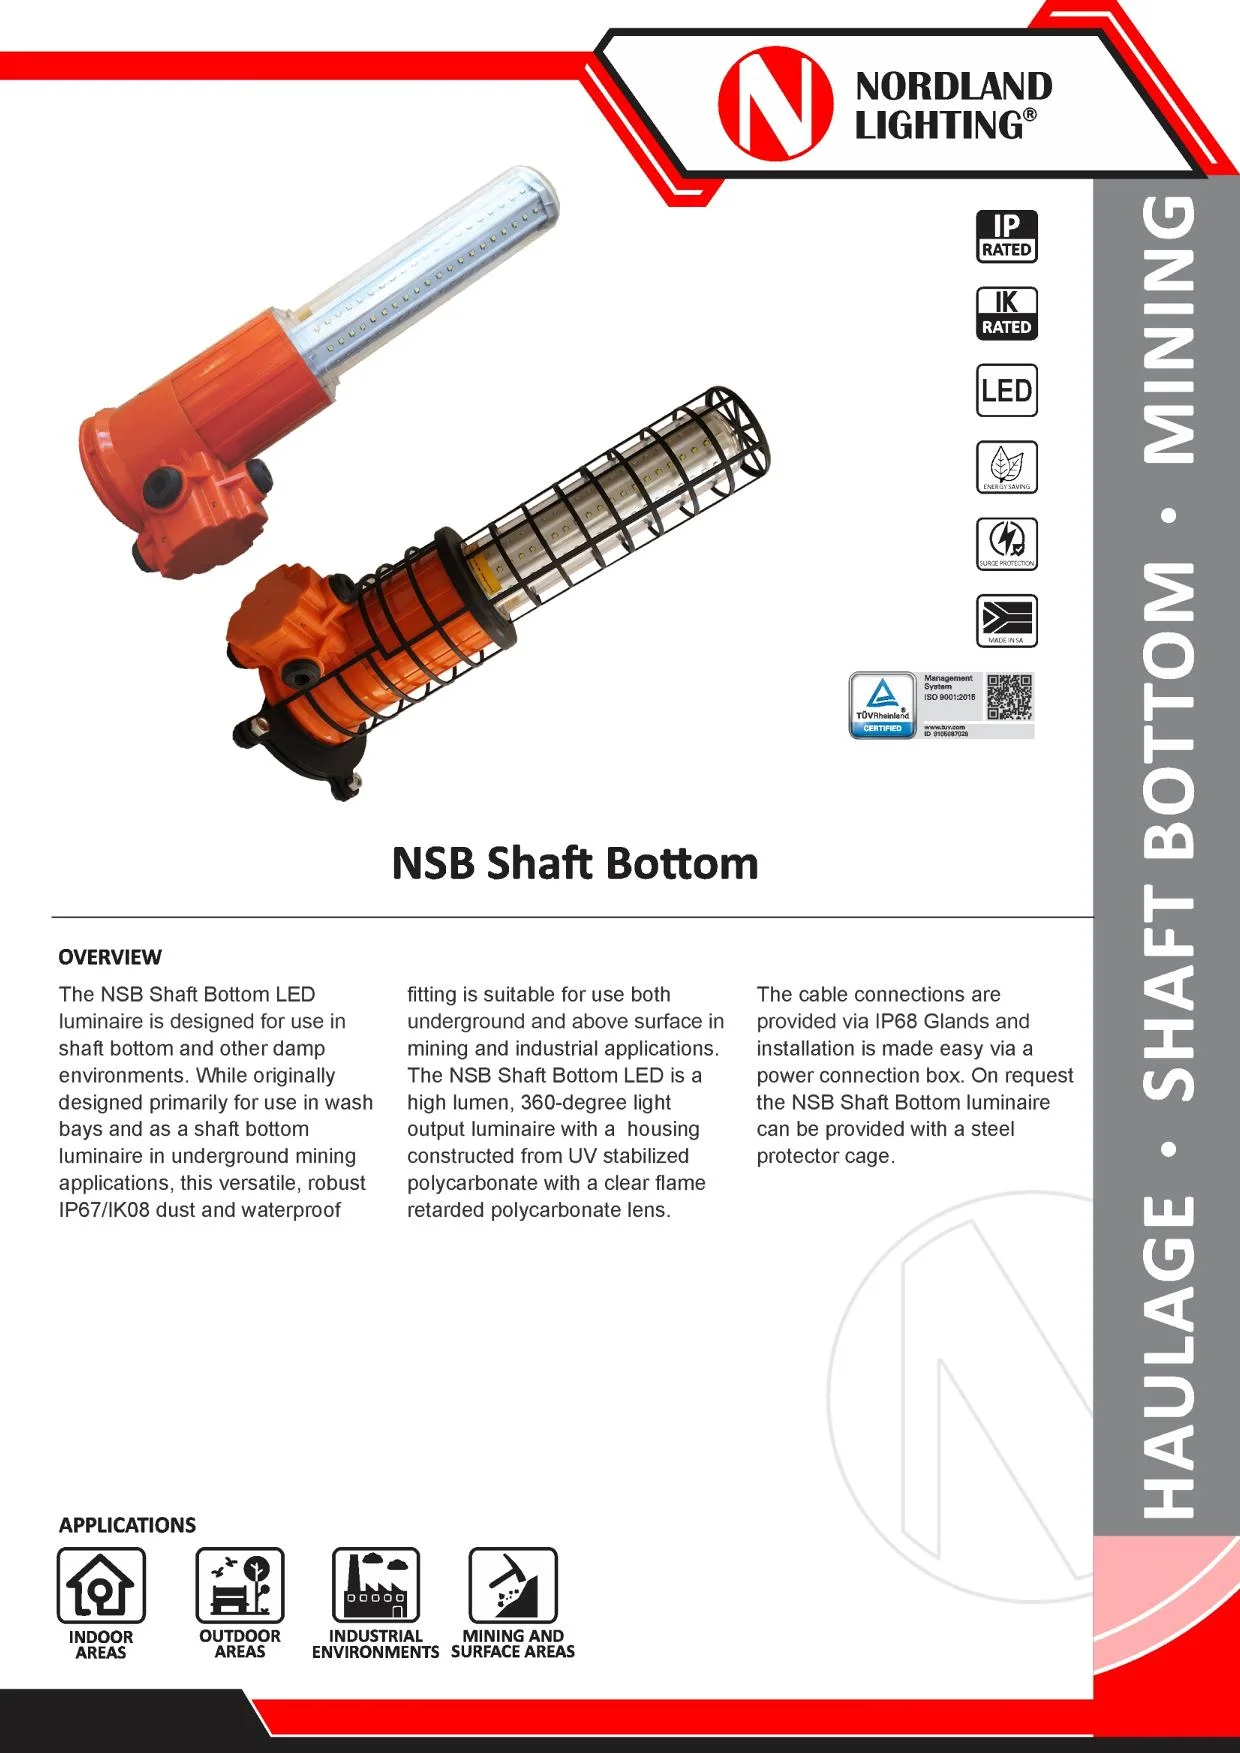 NL42 Nordland NSB Shaft Bottom LED Luminaire